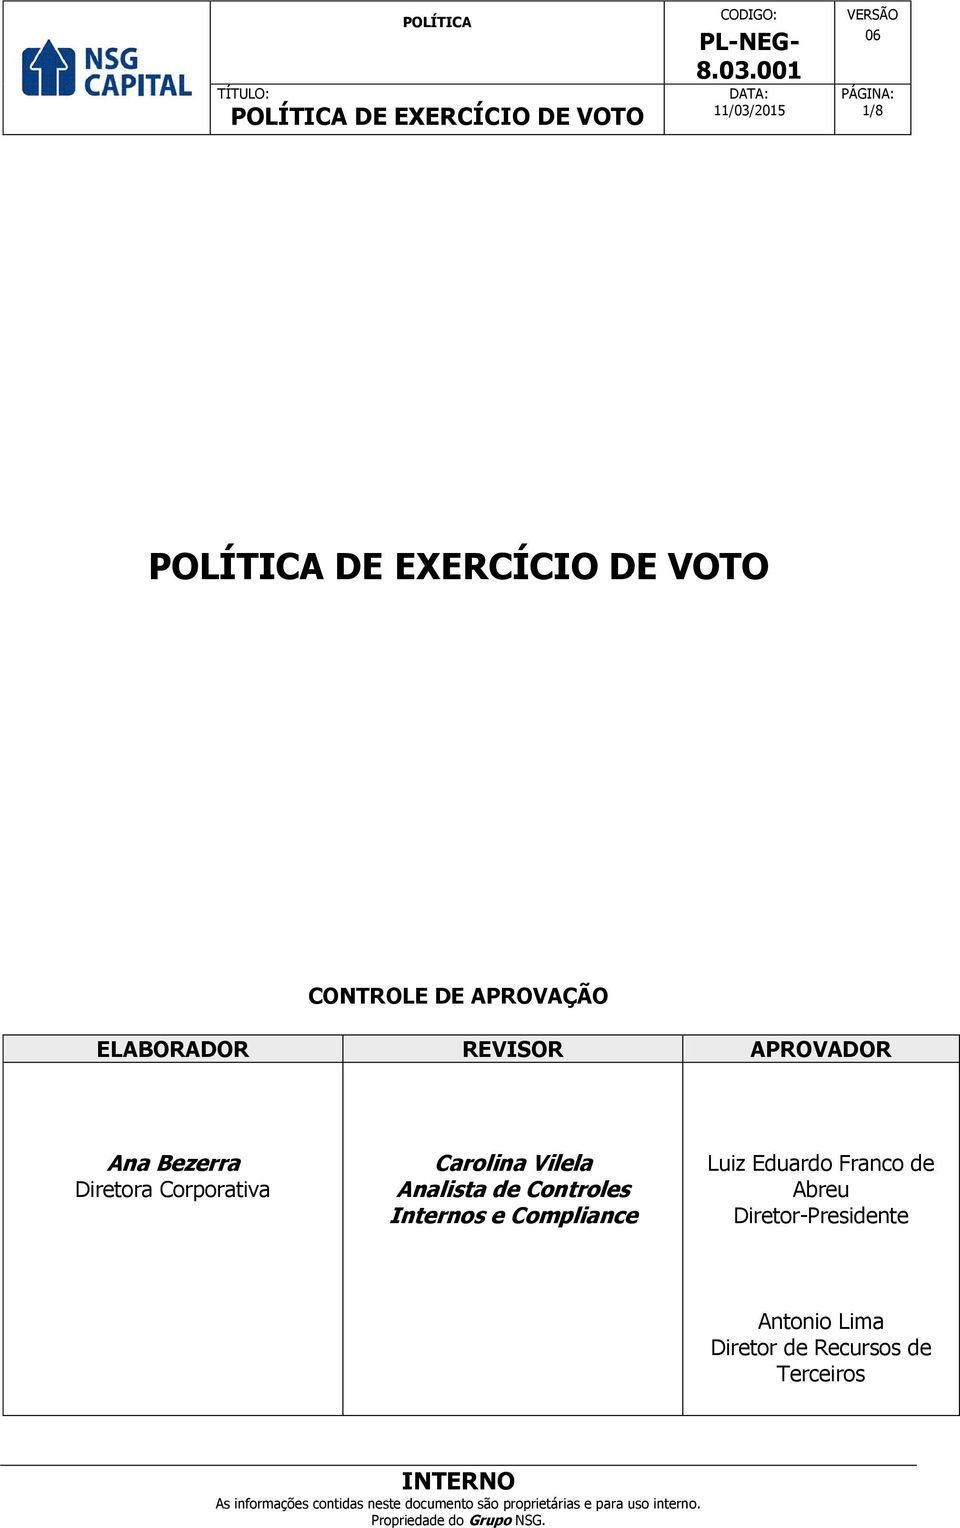 Controles Internos e Compliance Luiz Eduardo Franco de Abreu